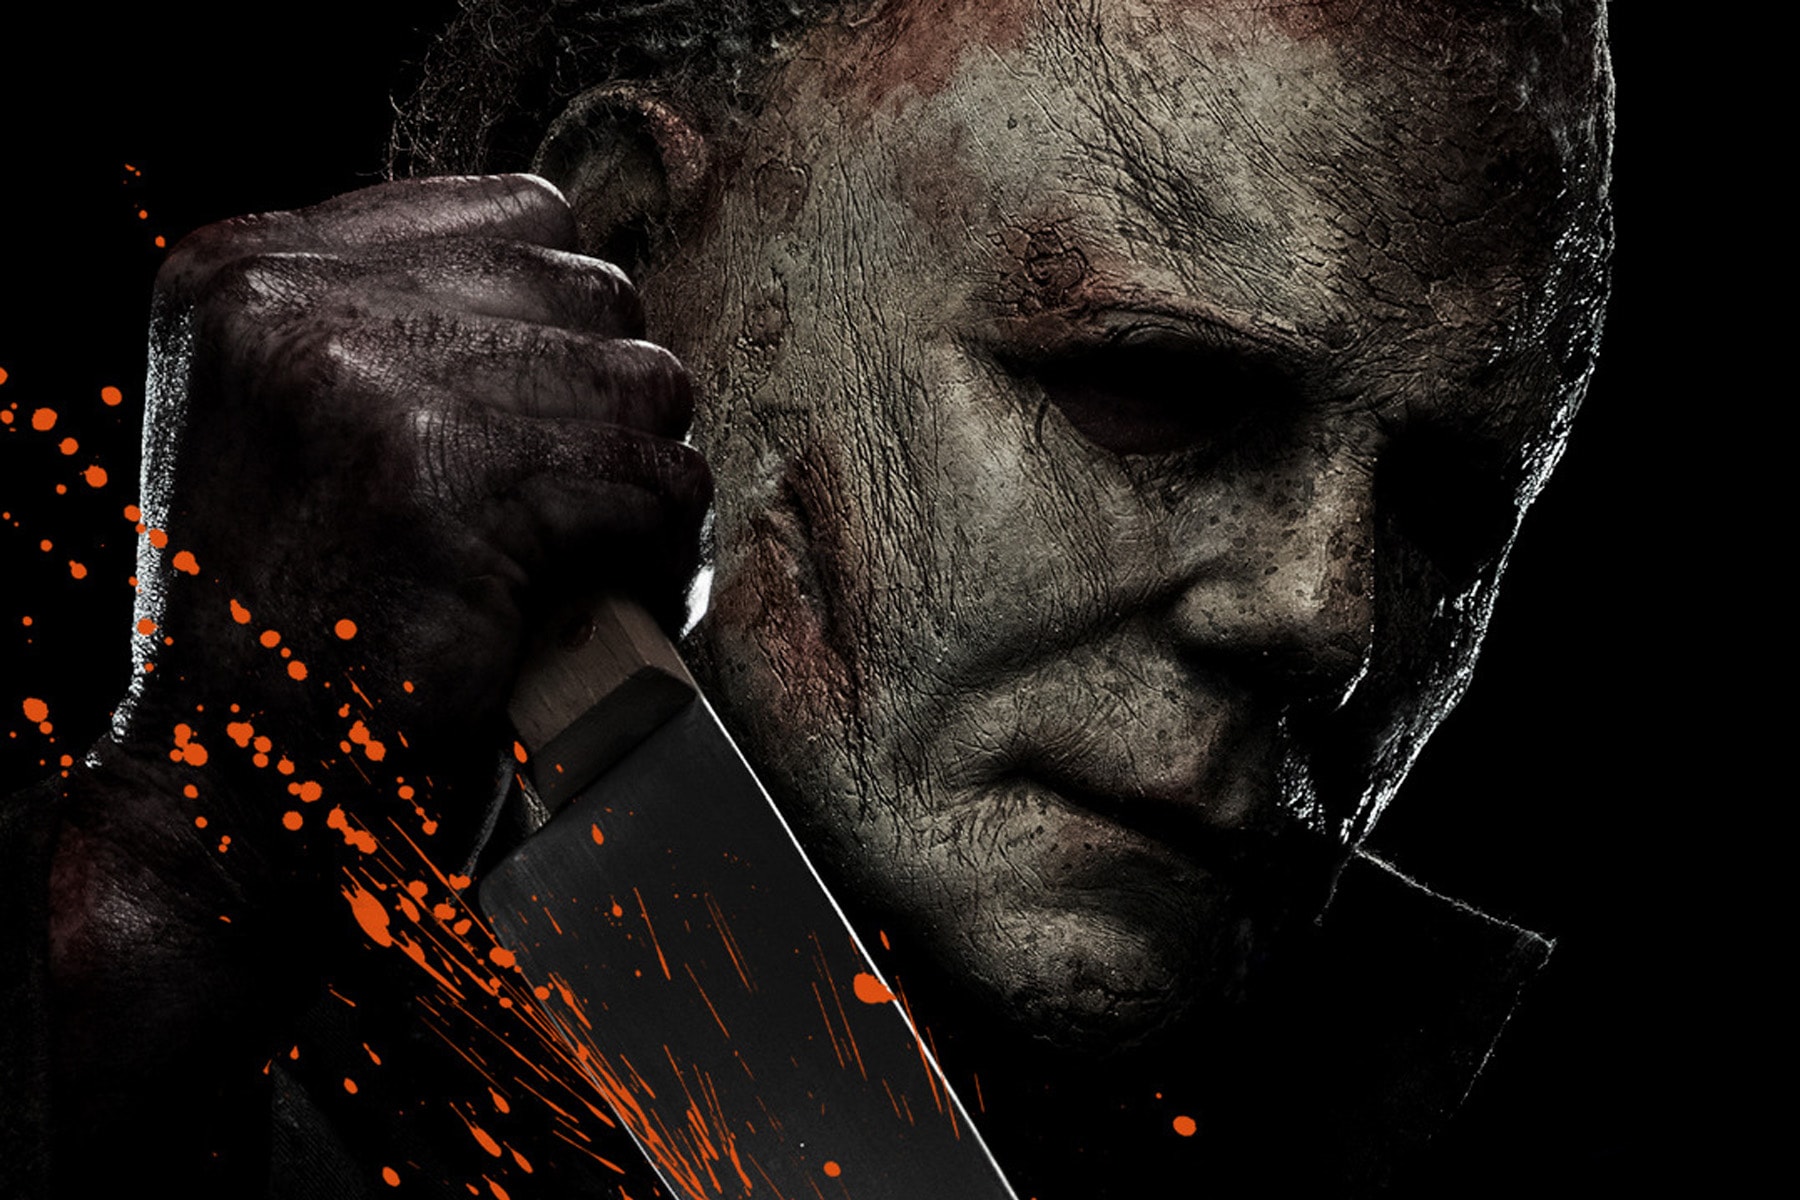 經典恐怖電影系列《Halloween》宣佈重啟全新影集版本